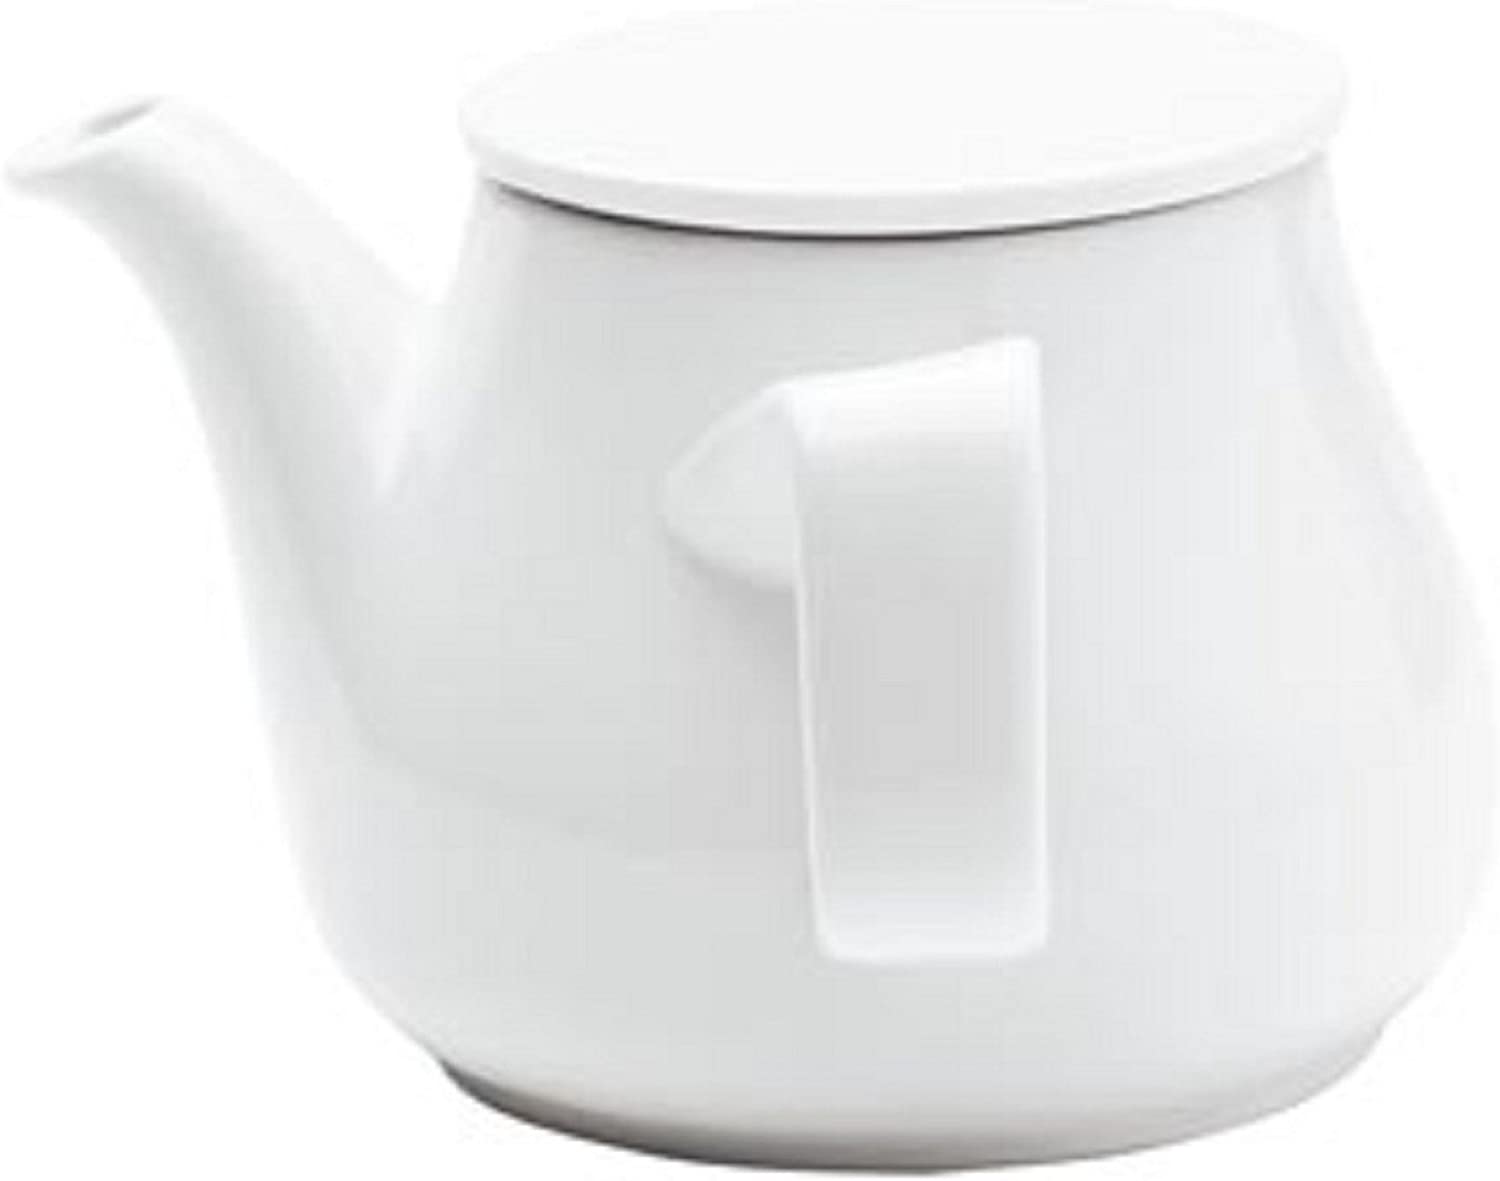 KAHLA Elixyr Teapot 13-1/2 oz, White Color, 1 Piece